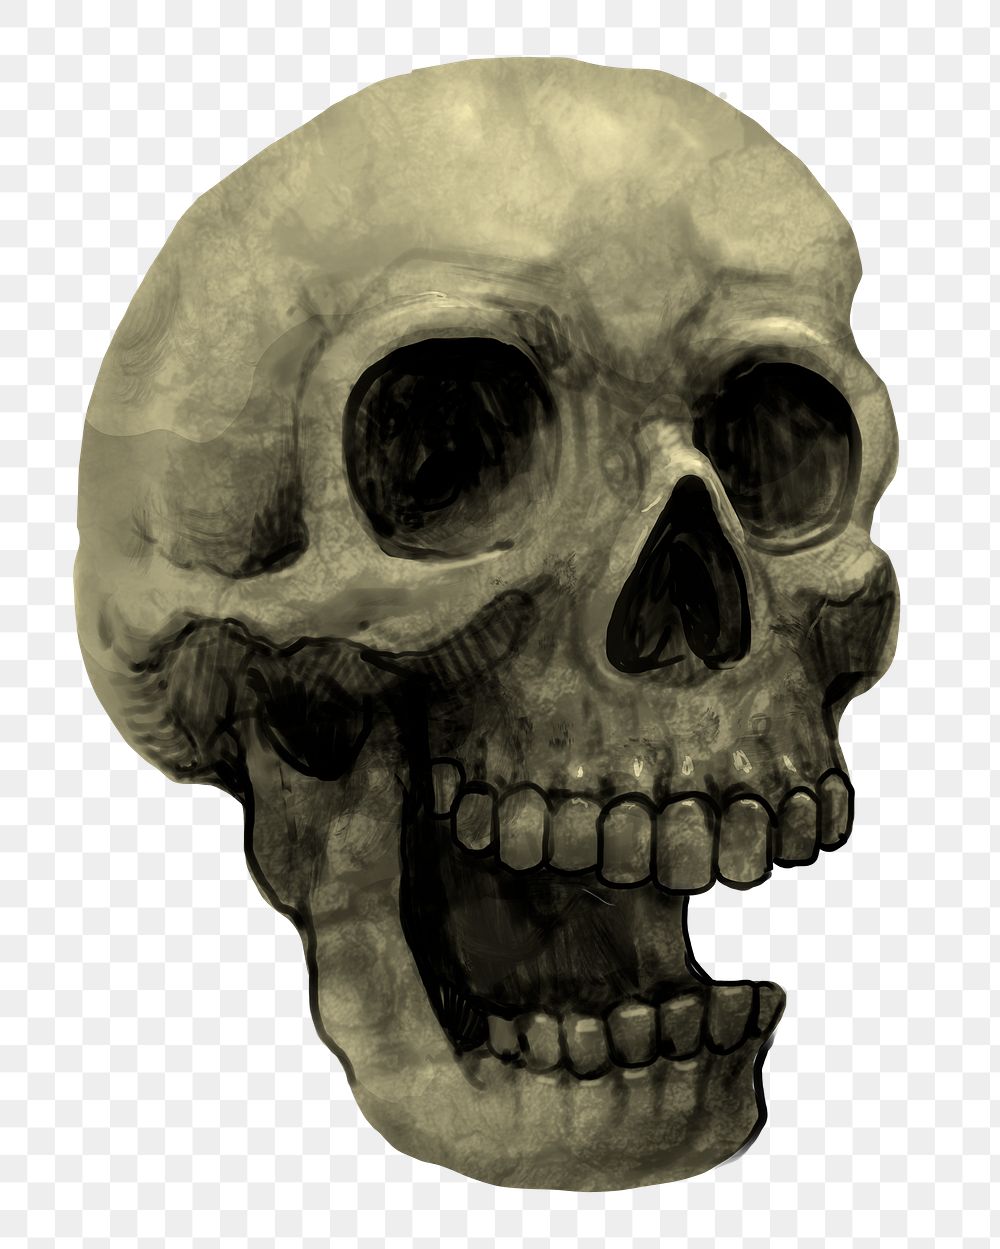 Skull png illustration, transparent background